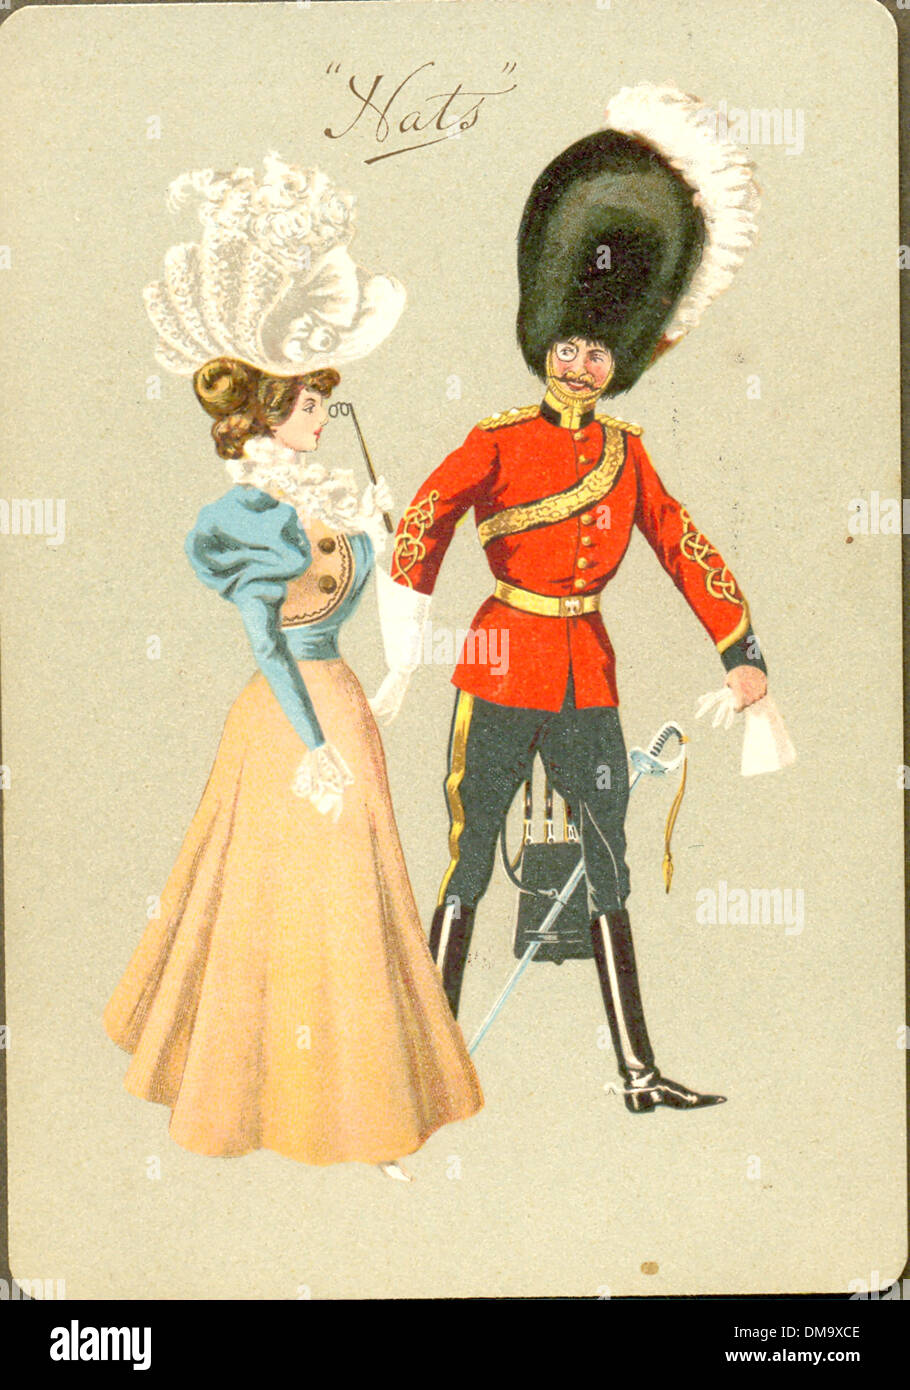 Carte postale humoristique de l'officier de gardes et de la dame comparant leurs chapeaux vers 1905 Banque D'Images